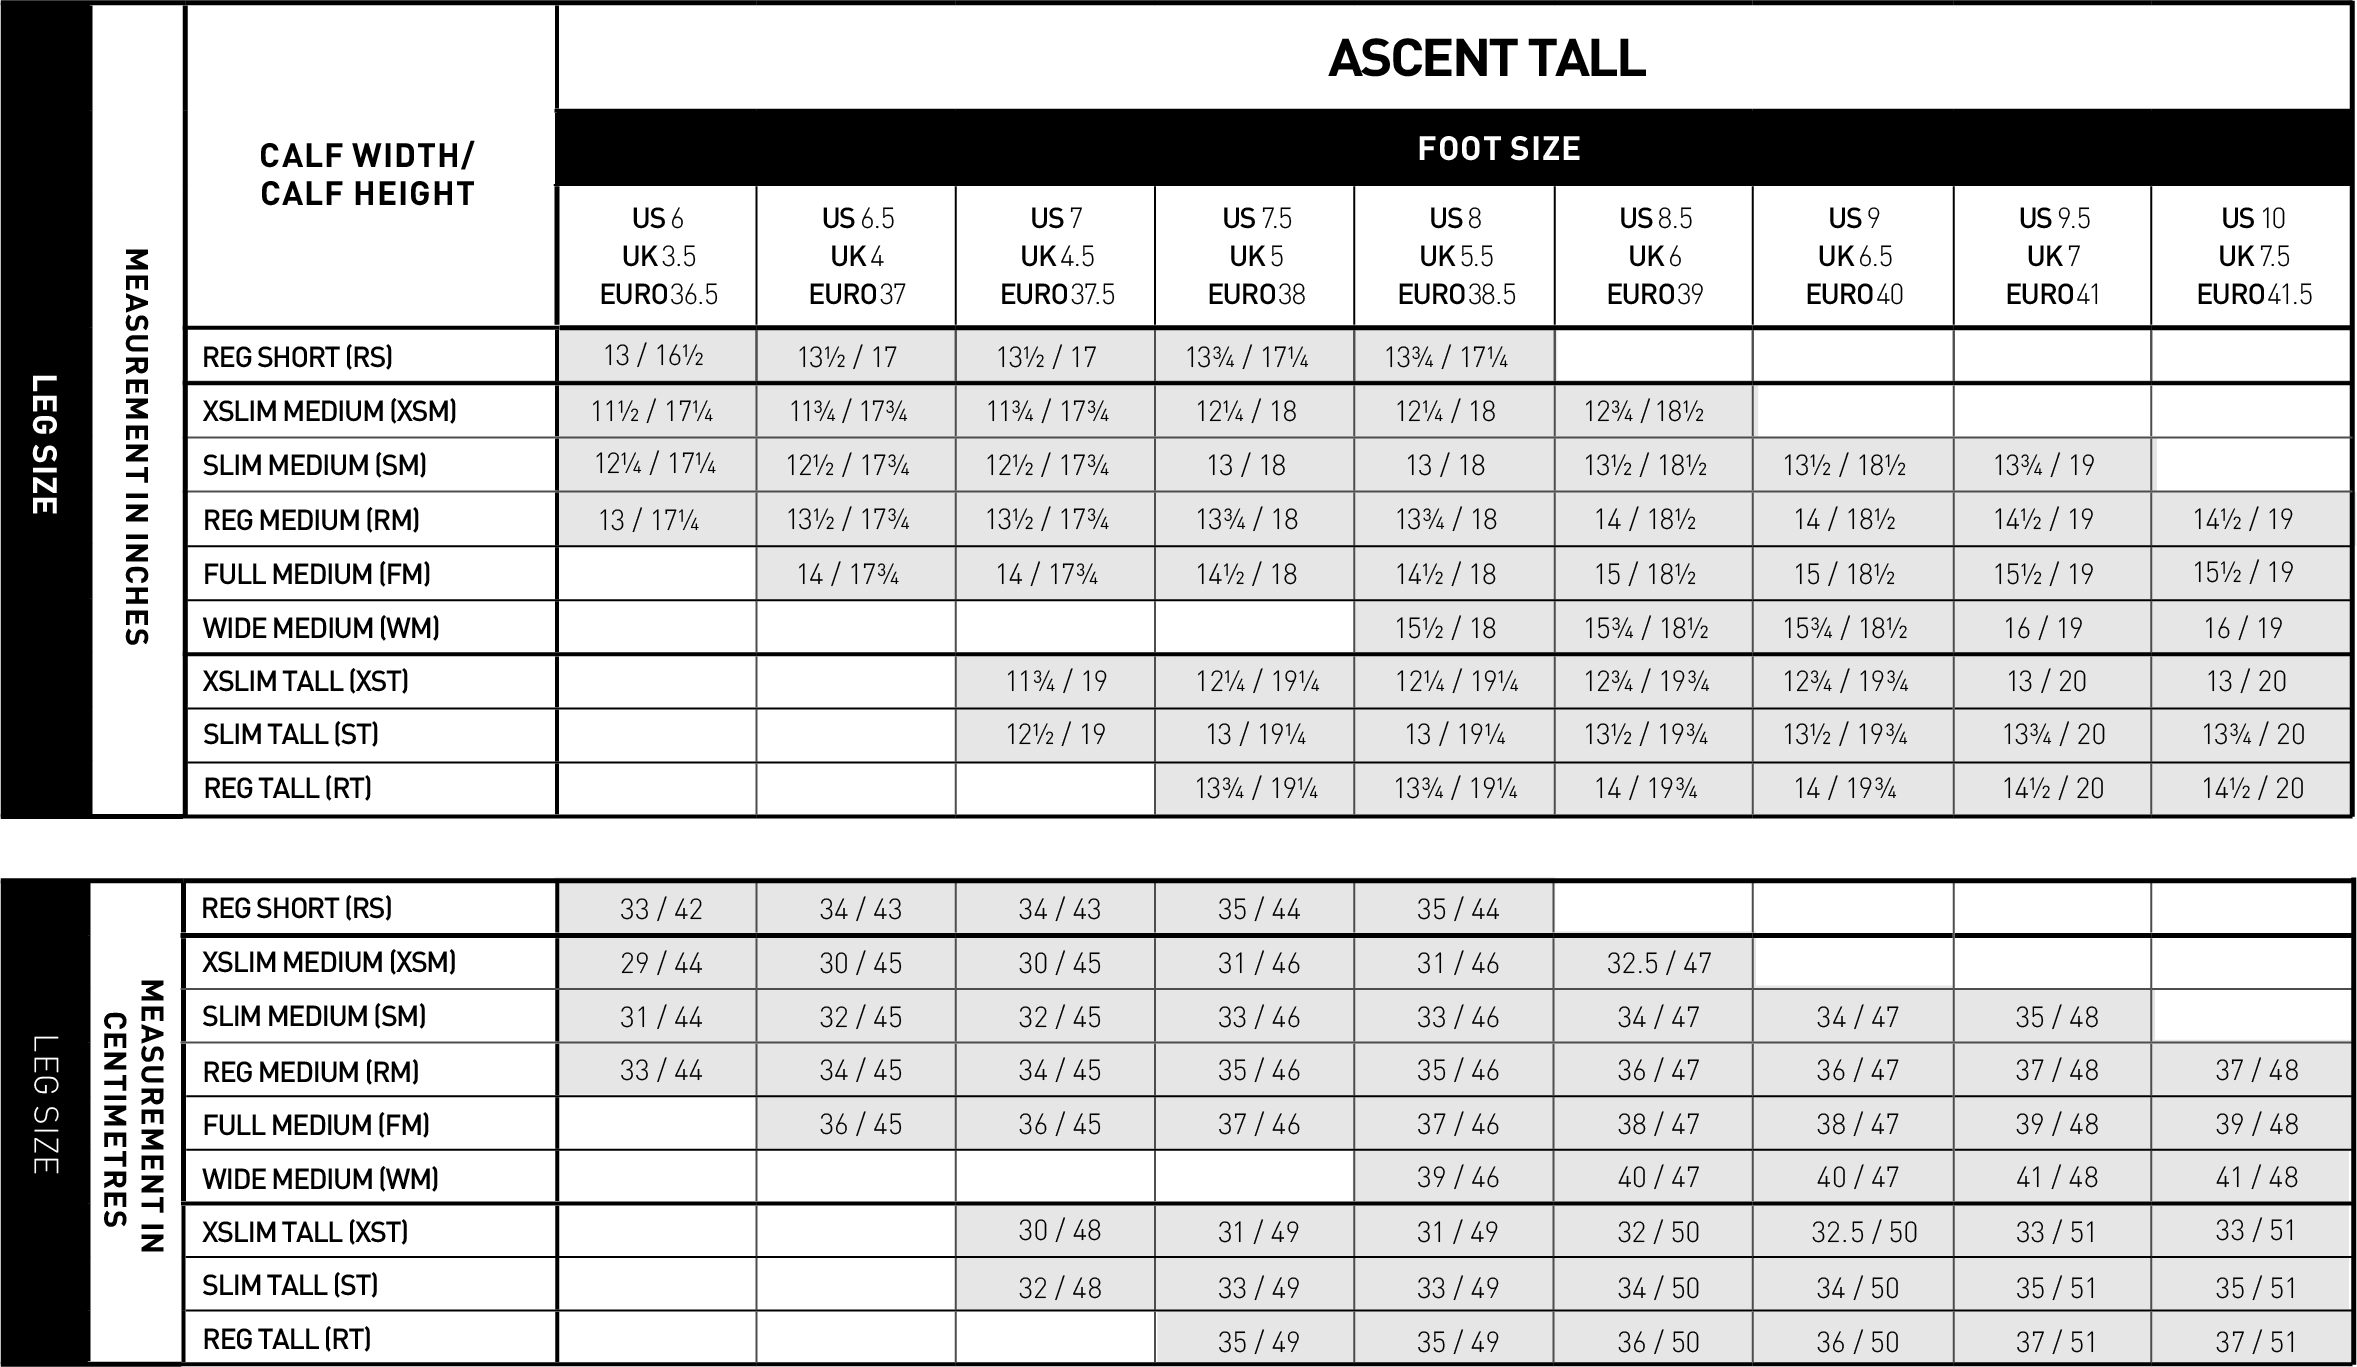 Ariat women's Ascent Tall riding boot